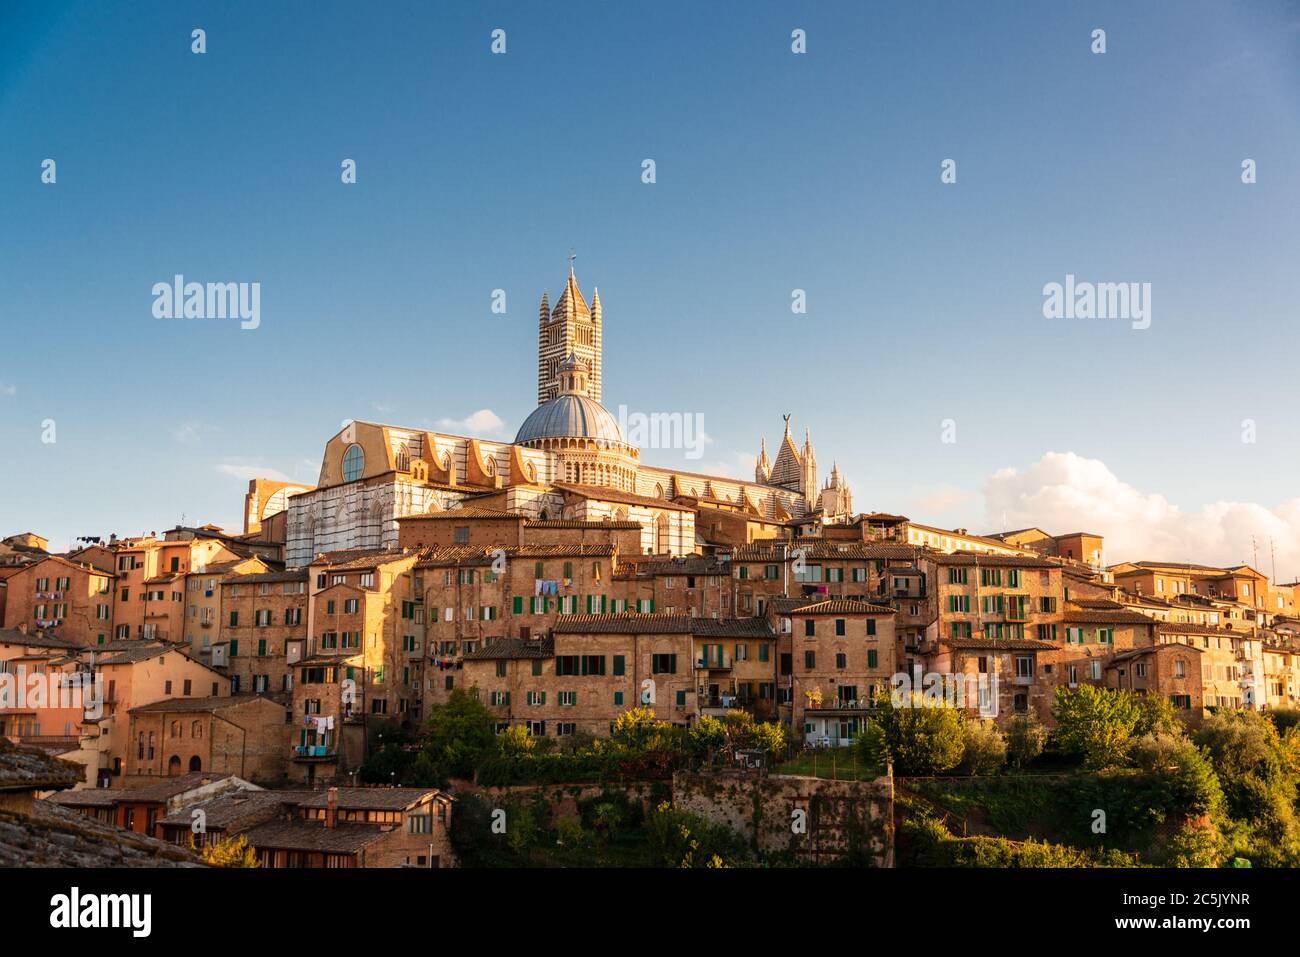 Stimmungsvoll das Stadtpanorama von Siena im spätsommerlichem Abendlicht Stock Photo